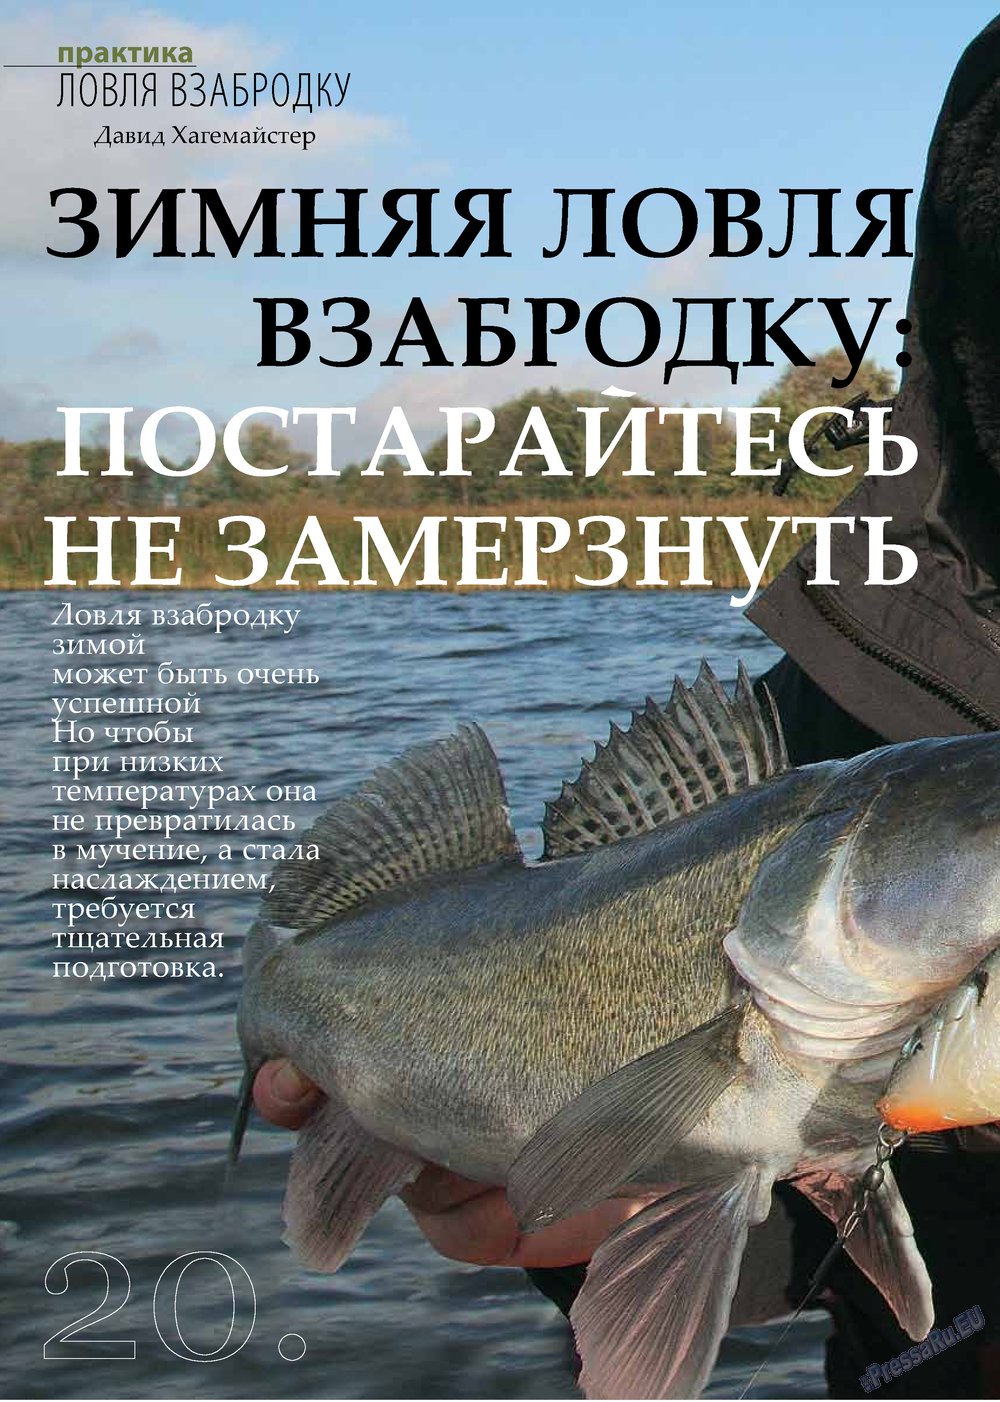 Рыбалка Plus, журнал. 2013 №2 стр.20